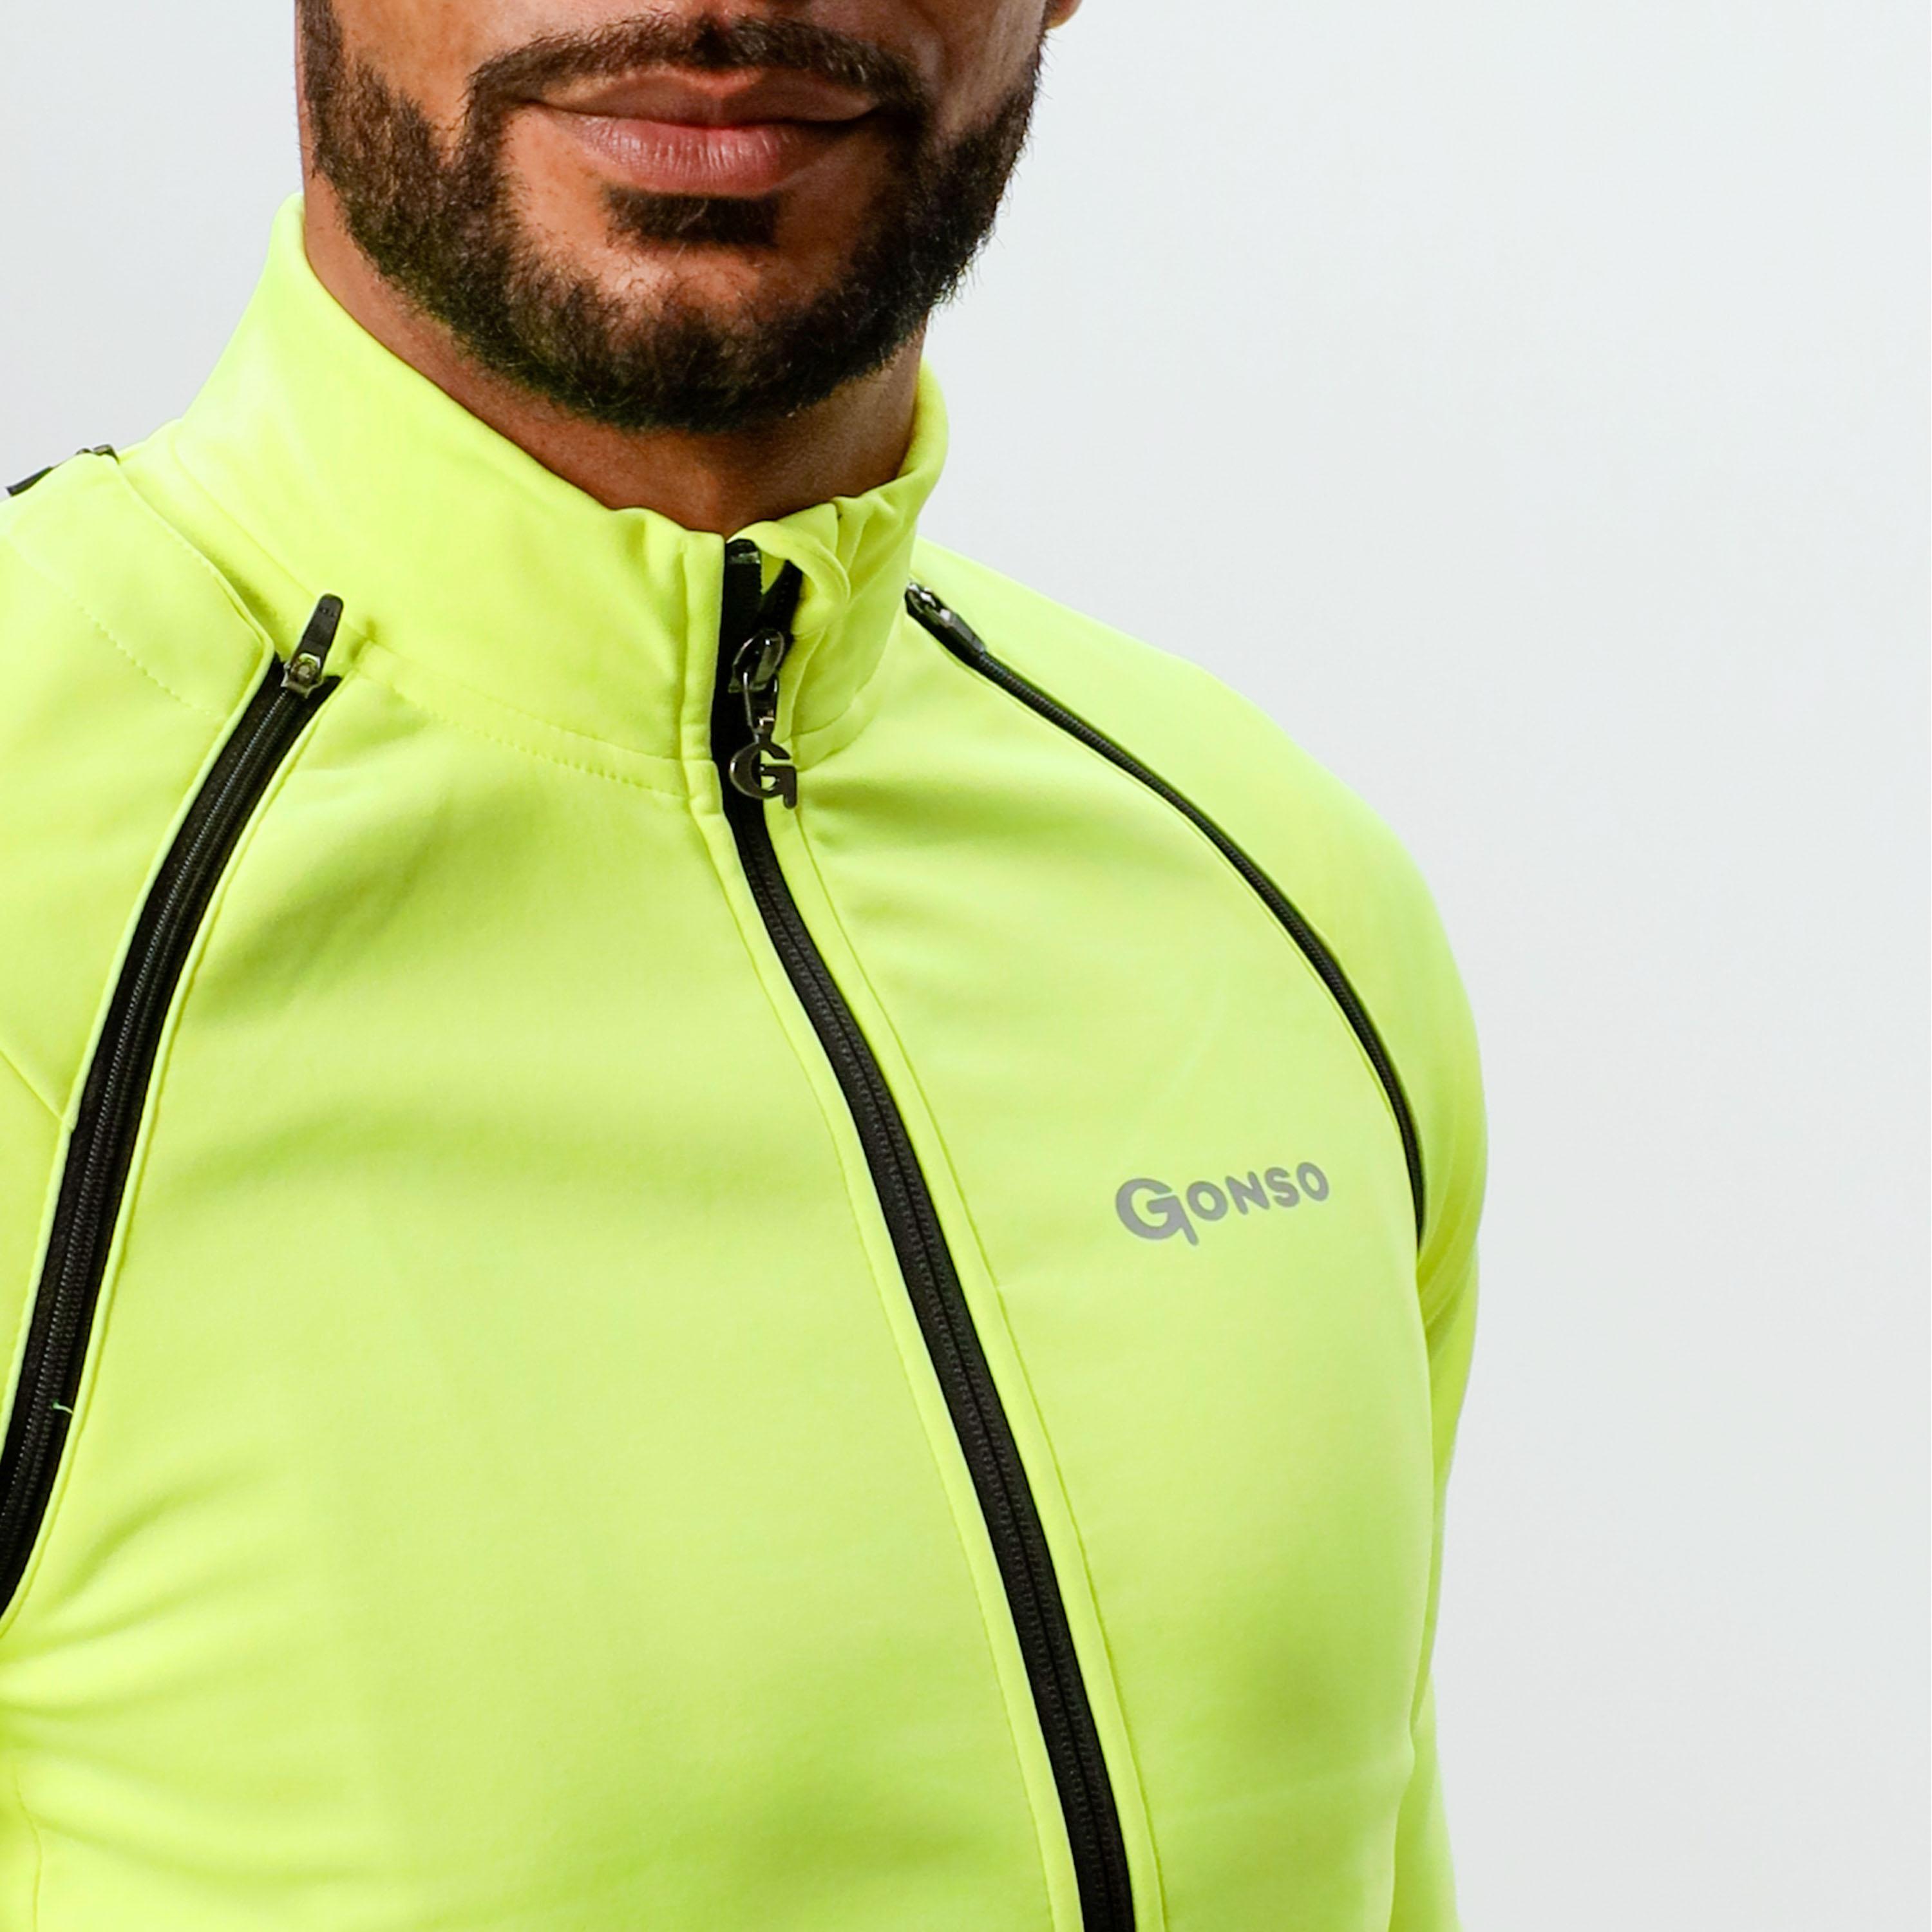 Shop SportScheck Fahrradjacke Gonso im kaufen yellow von Online Herren safety